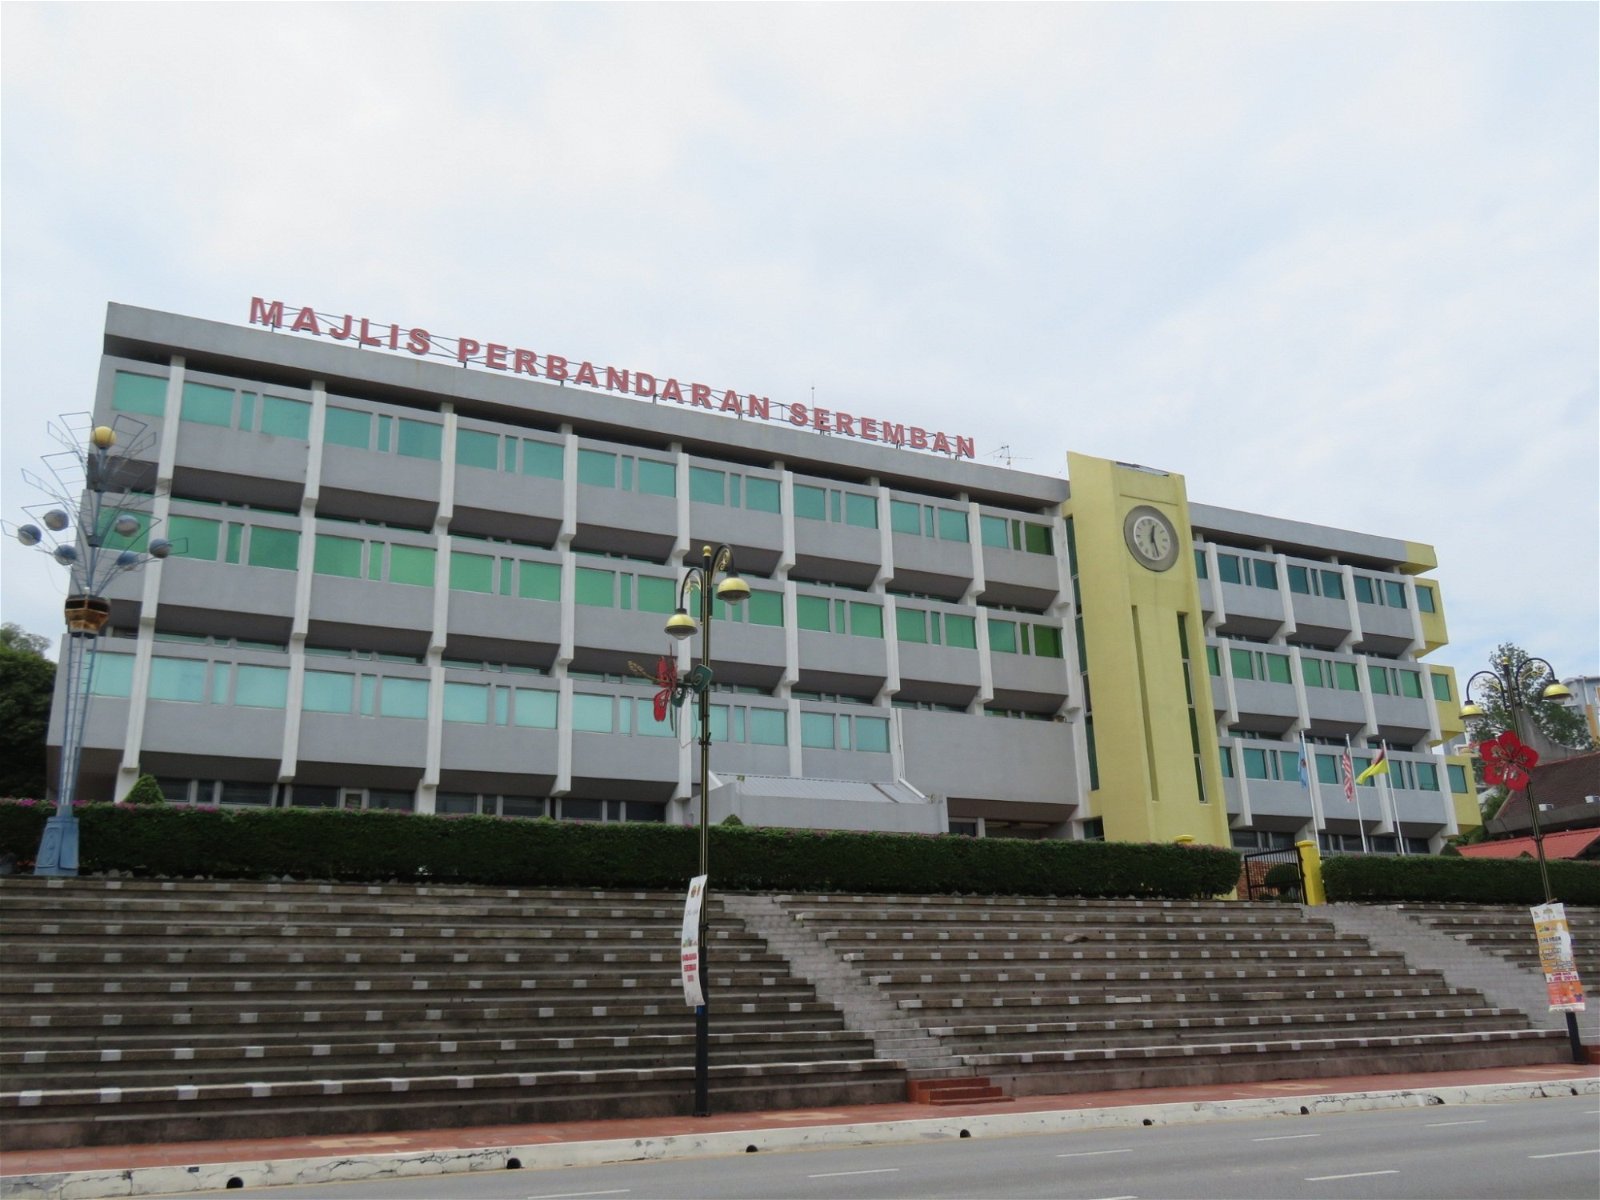 芙蓉市议会已接受竖立告示牌，宣传新任县市议员的建议。 图为芙蓉市议会大厦。